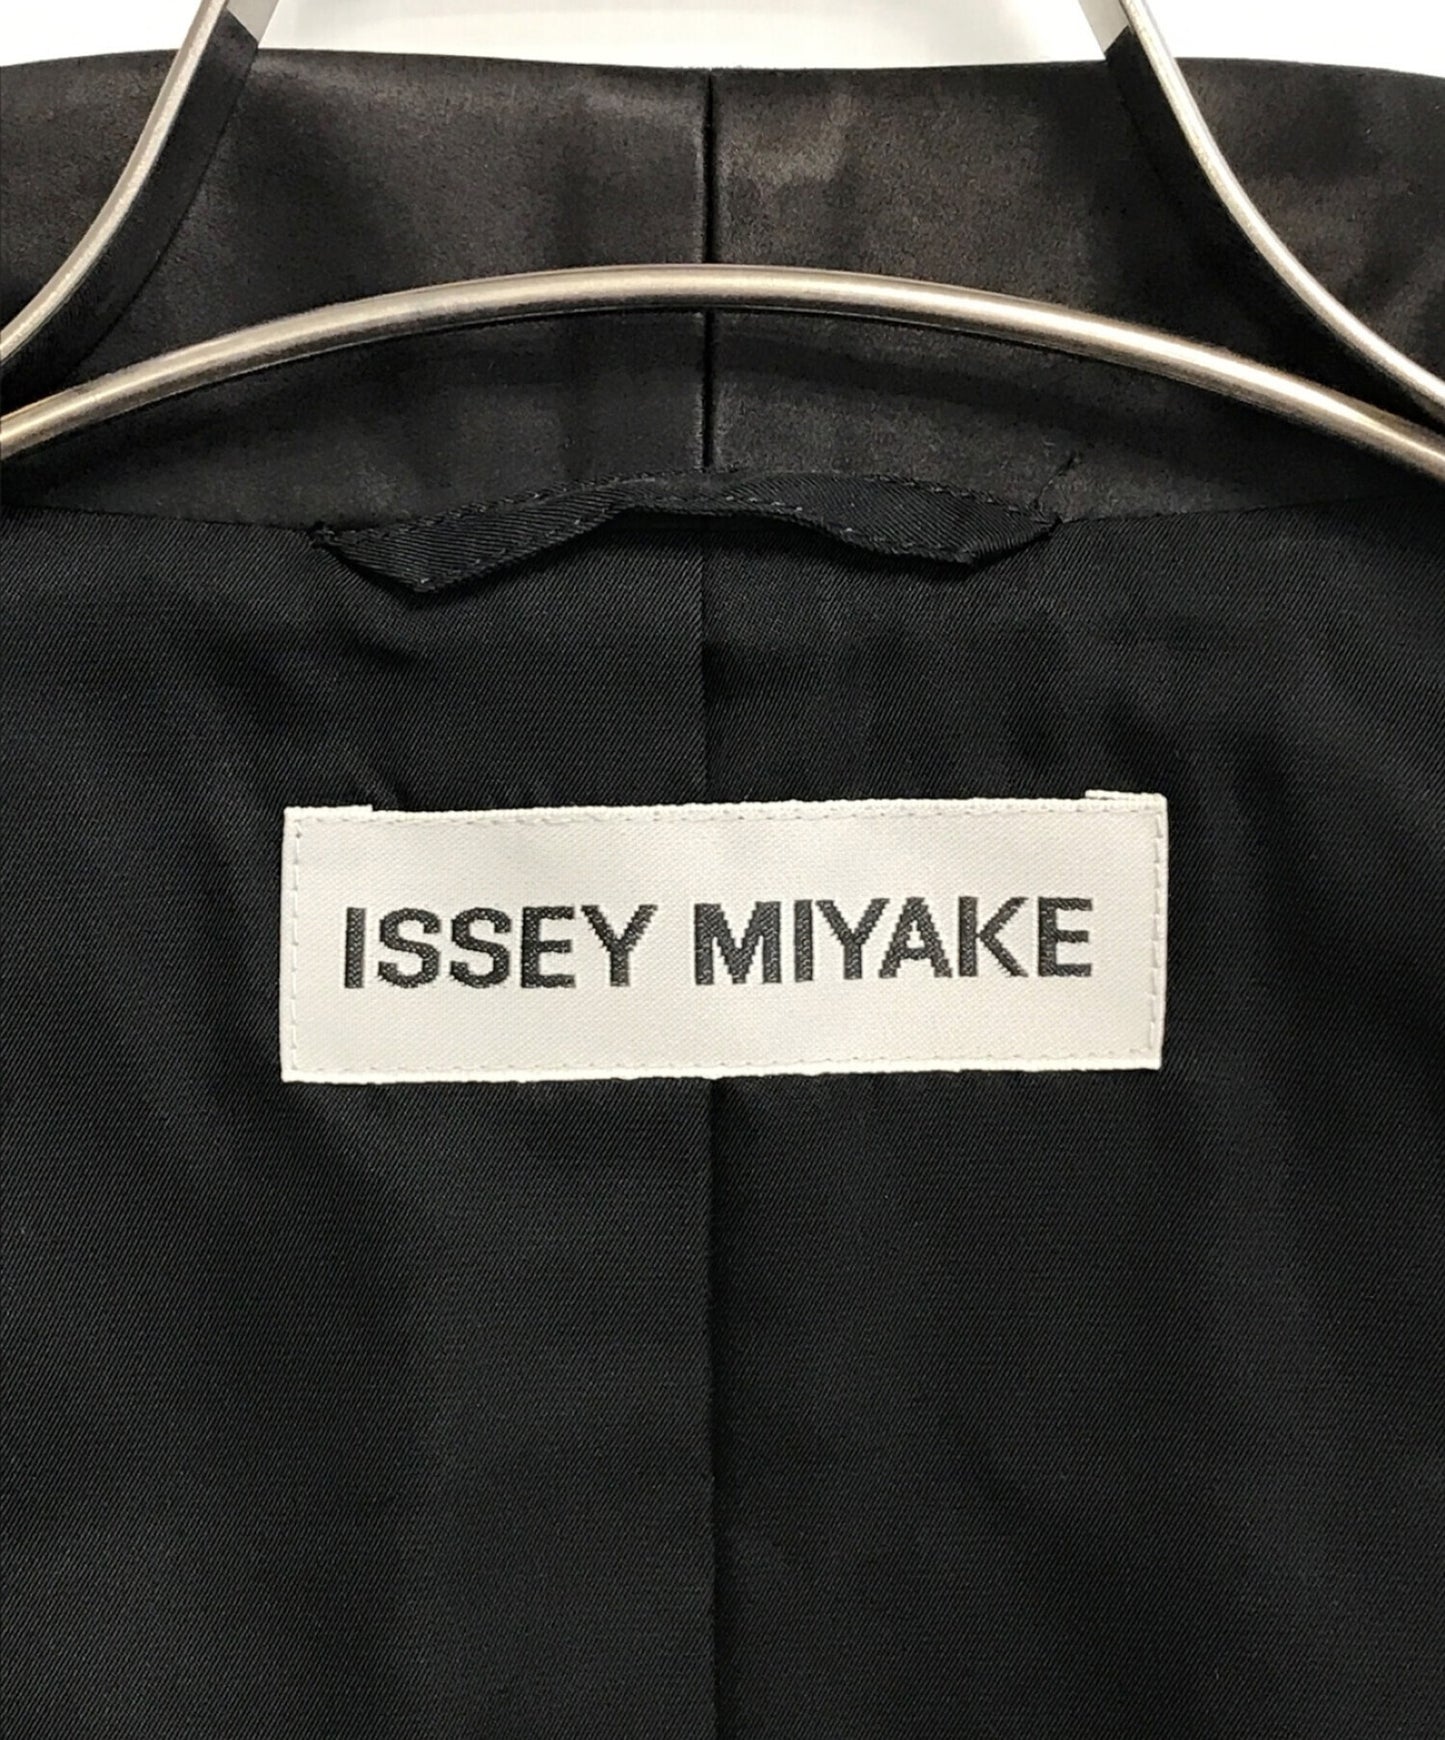 แจ็คเก็ต Stand-Up ของ Issey Miyake